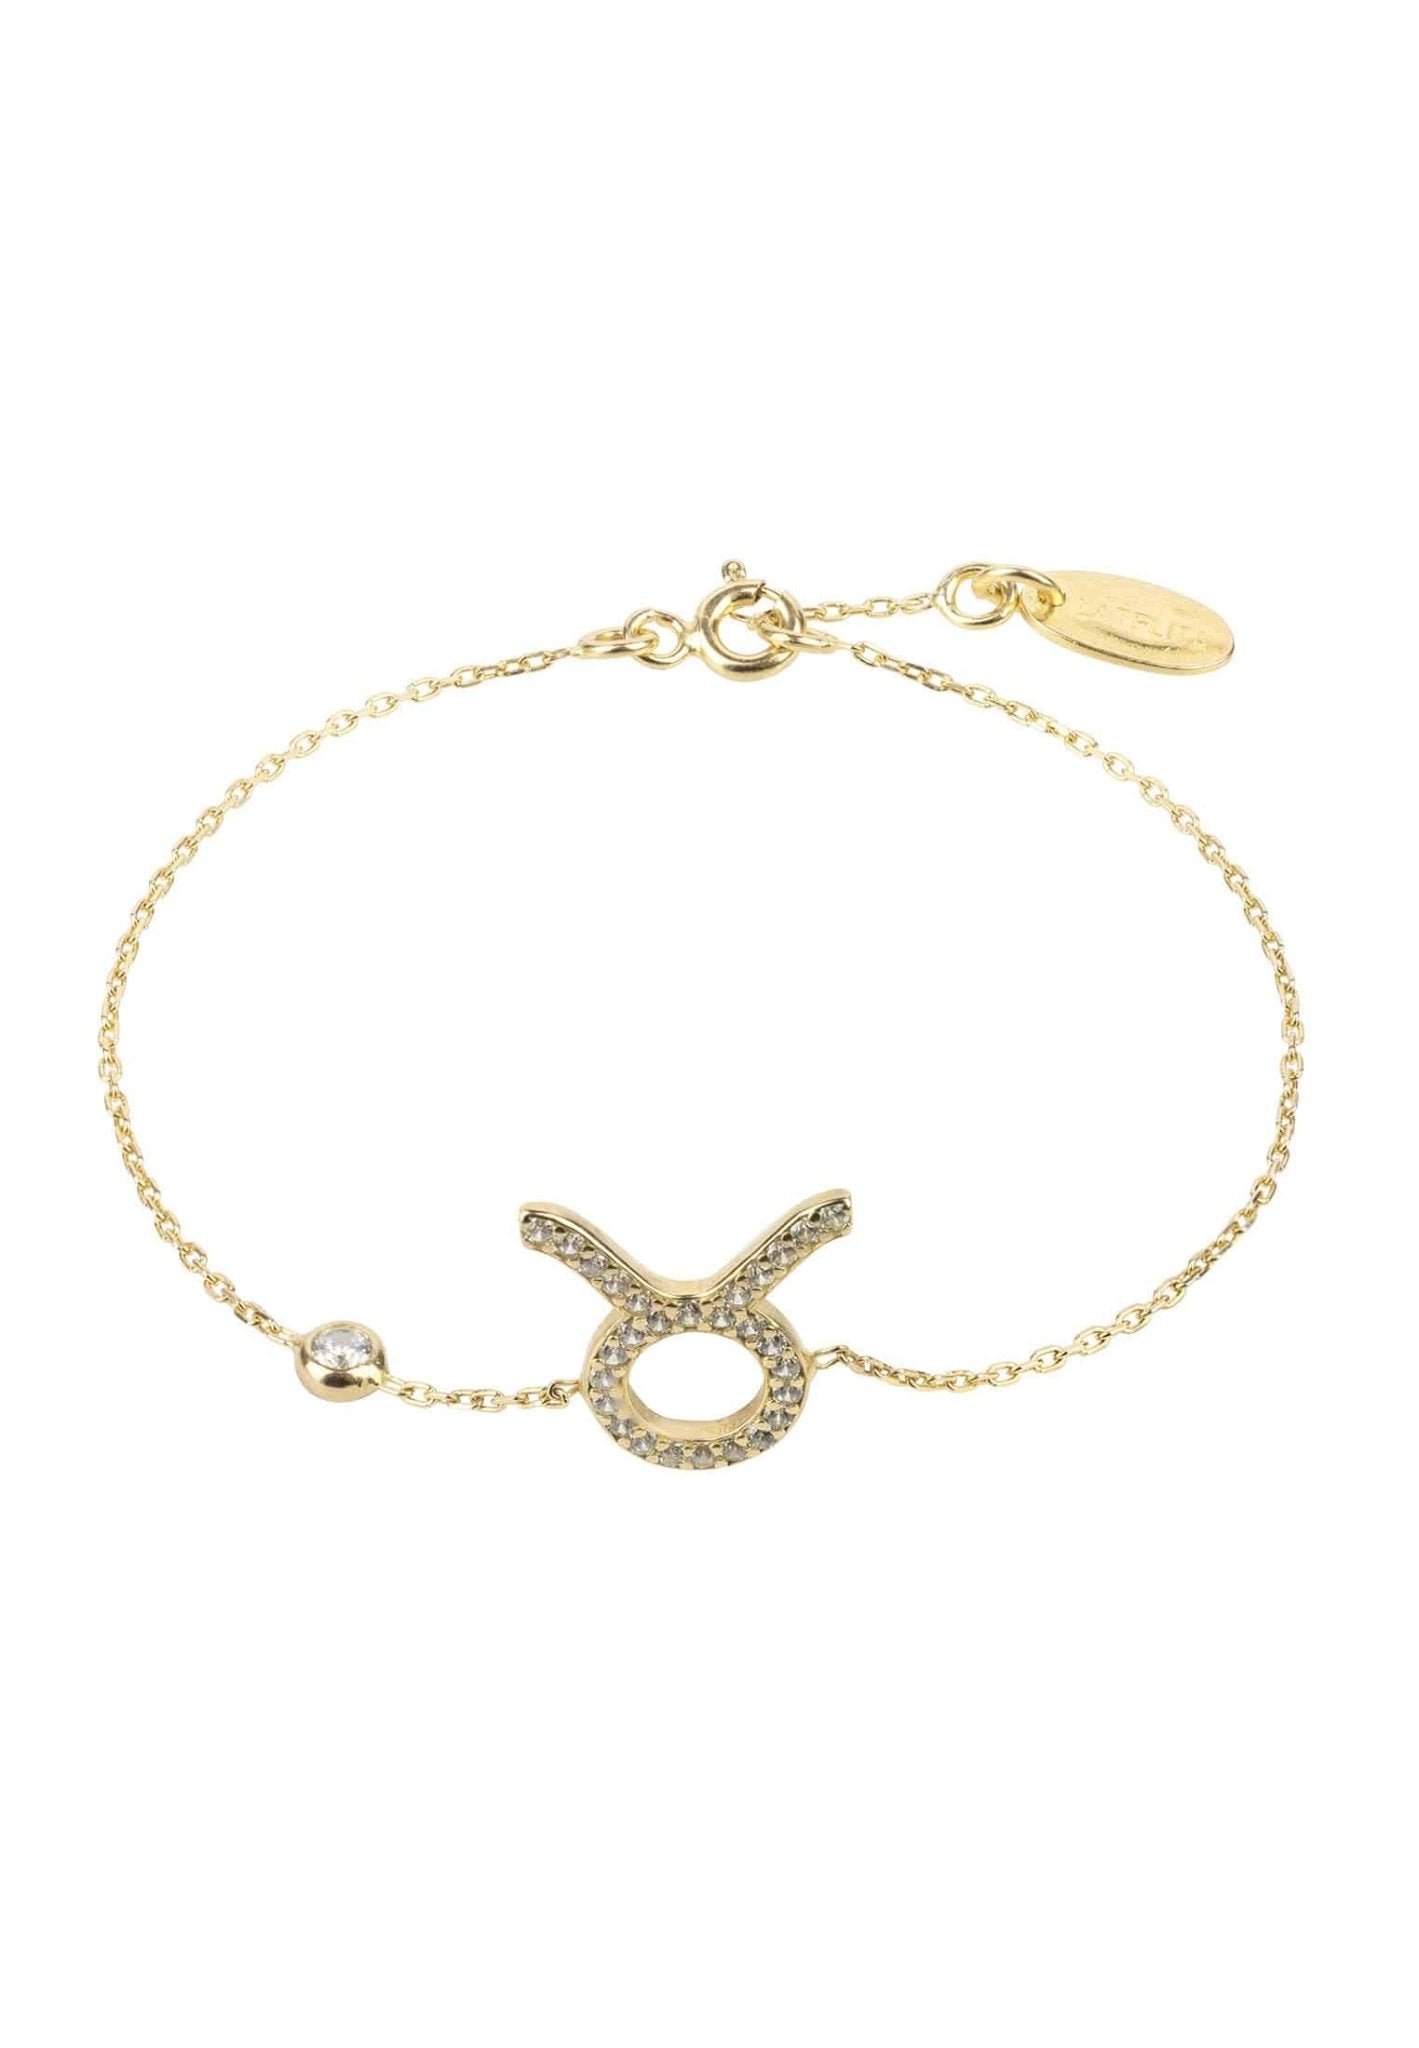 Personalized Bracelets - Zodiac Star Sign Bracelet Taurus 